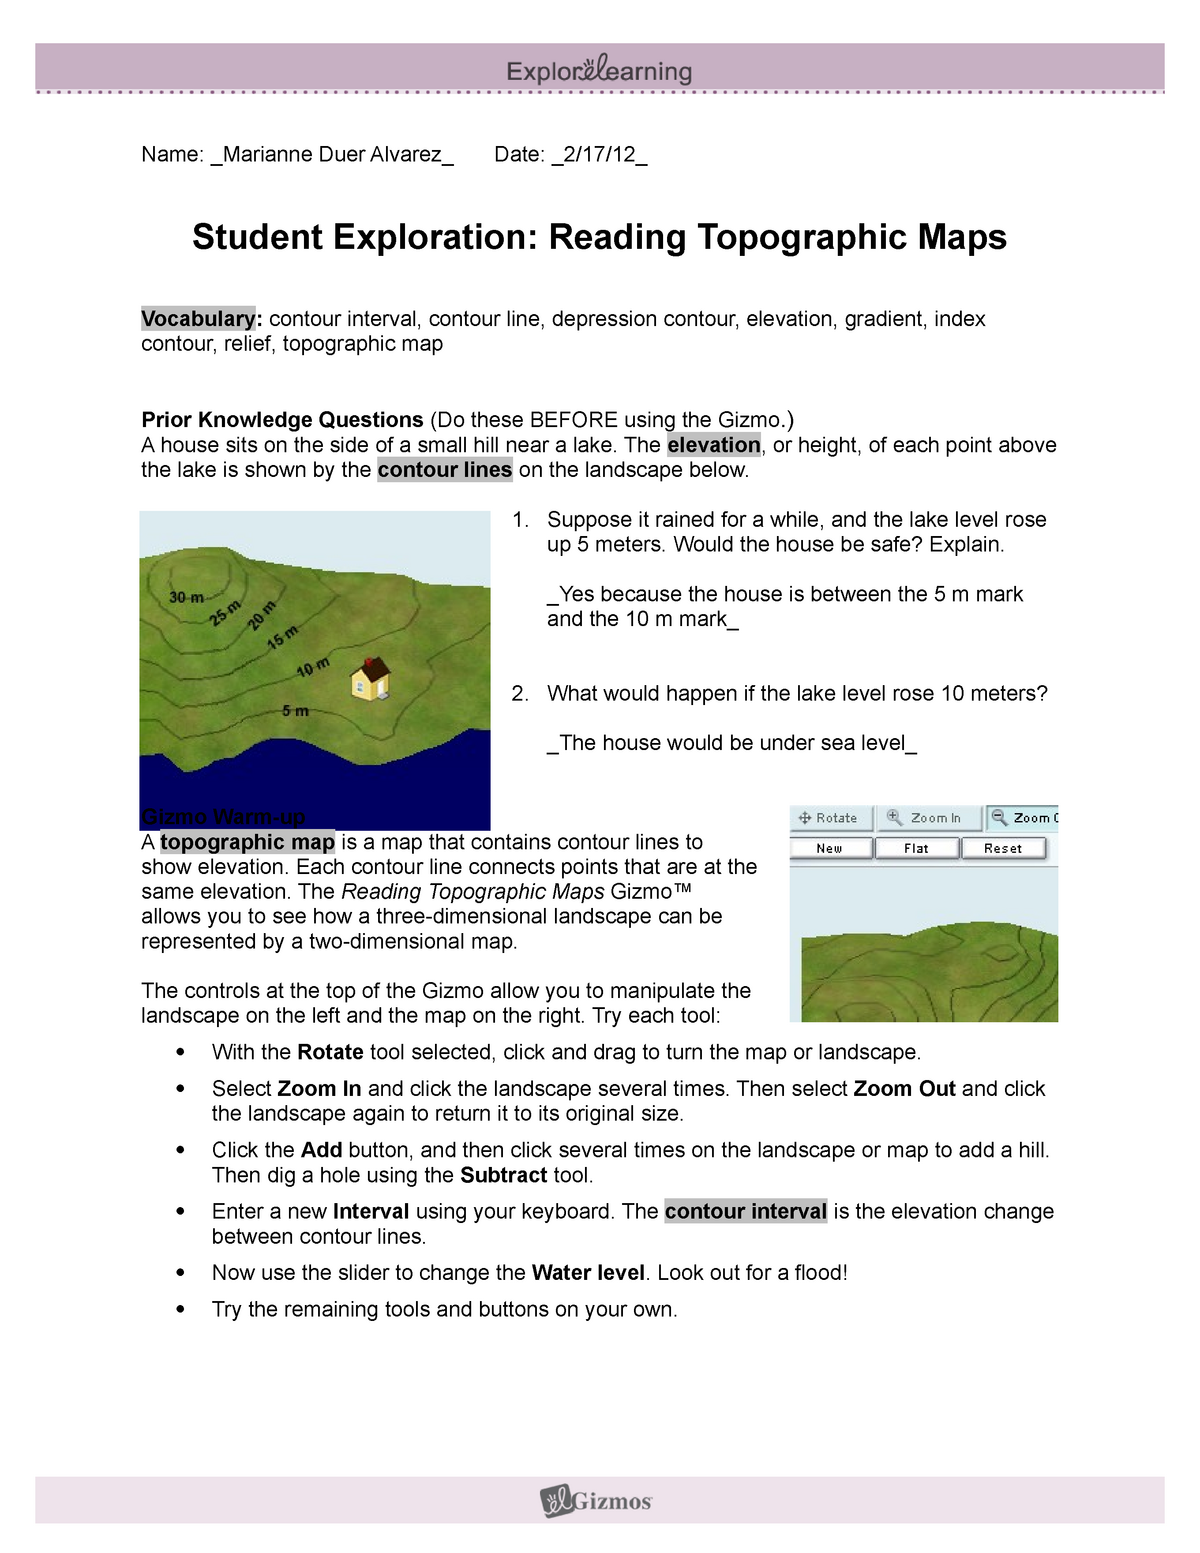 Readingtopomapsse 20 - pravzaprav potrebujem pomoč pri nekaterih Inside Topographic Map Worksheet Answer Key